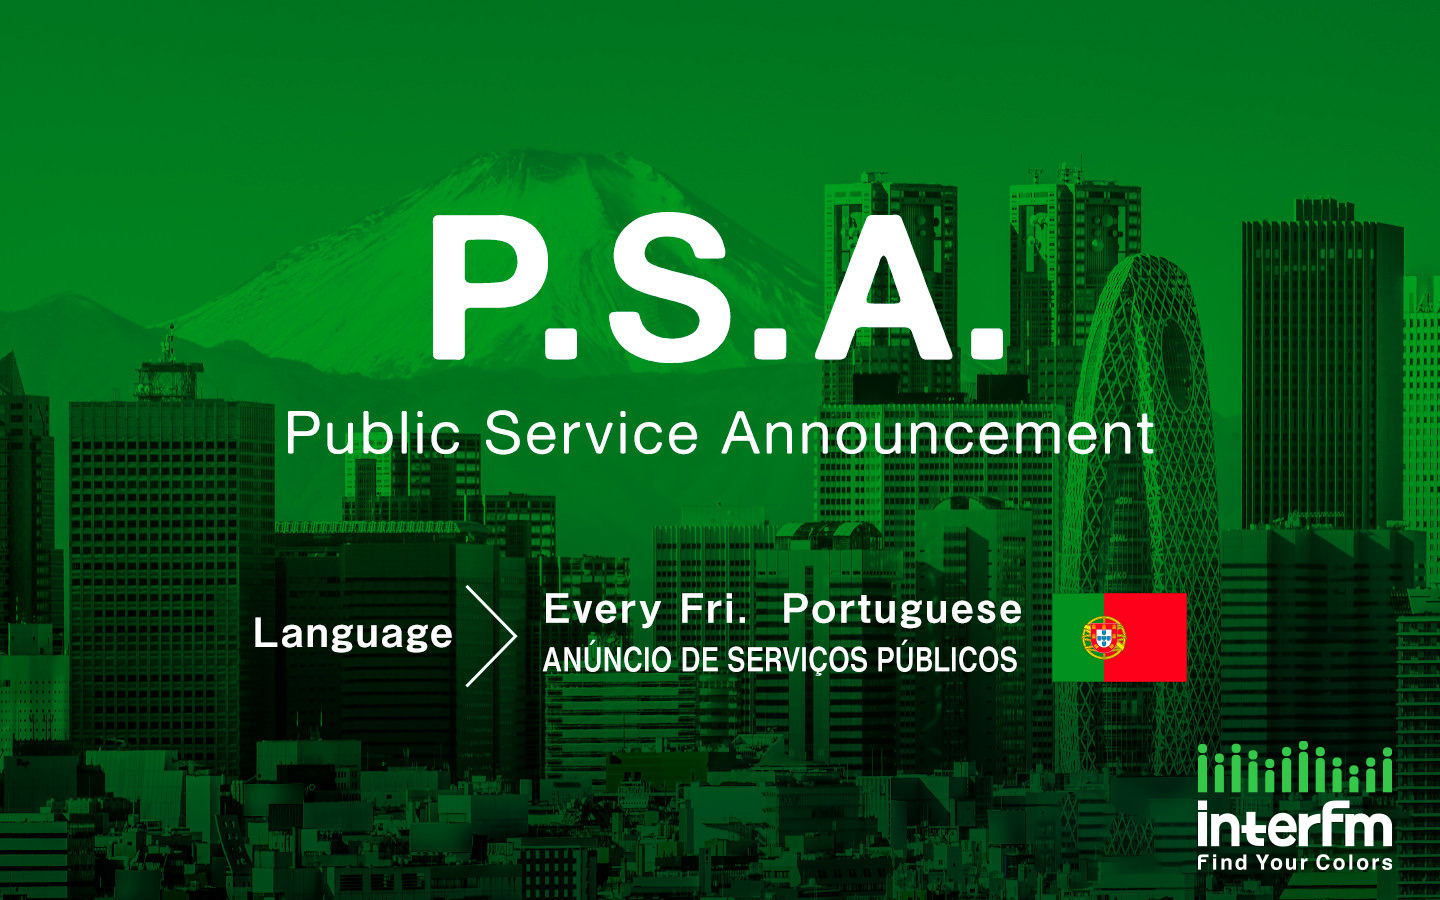 Anúncio de serviços públicos - Public Service Announcement (Português - Portuguese)